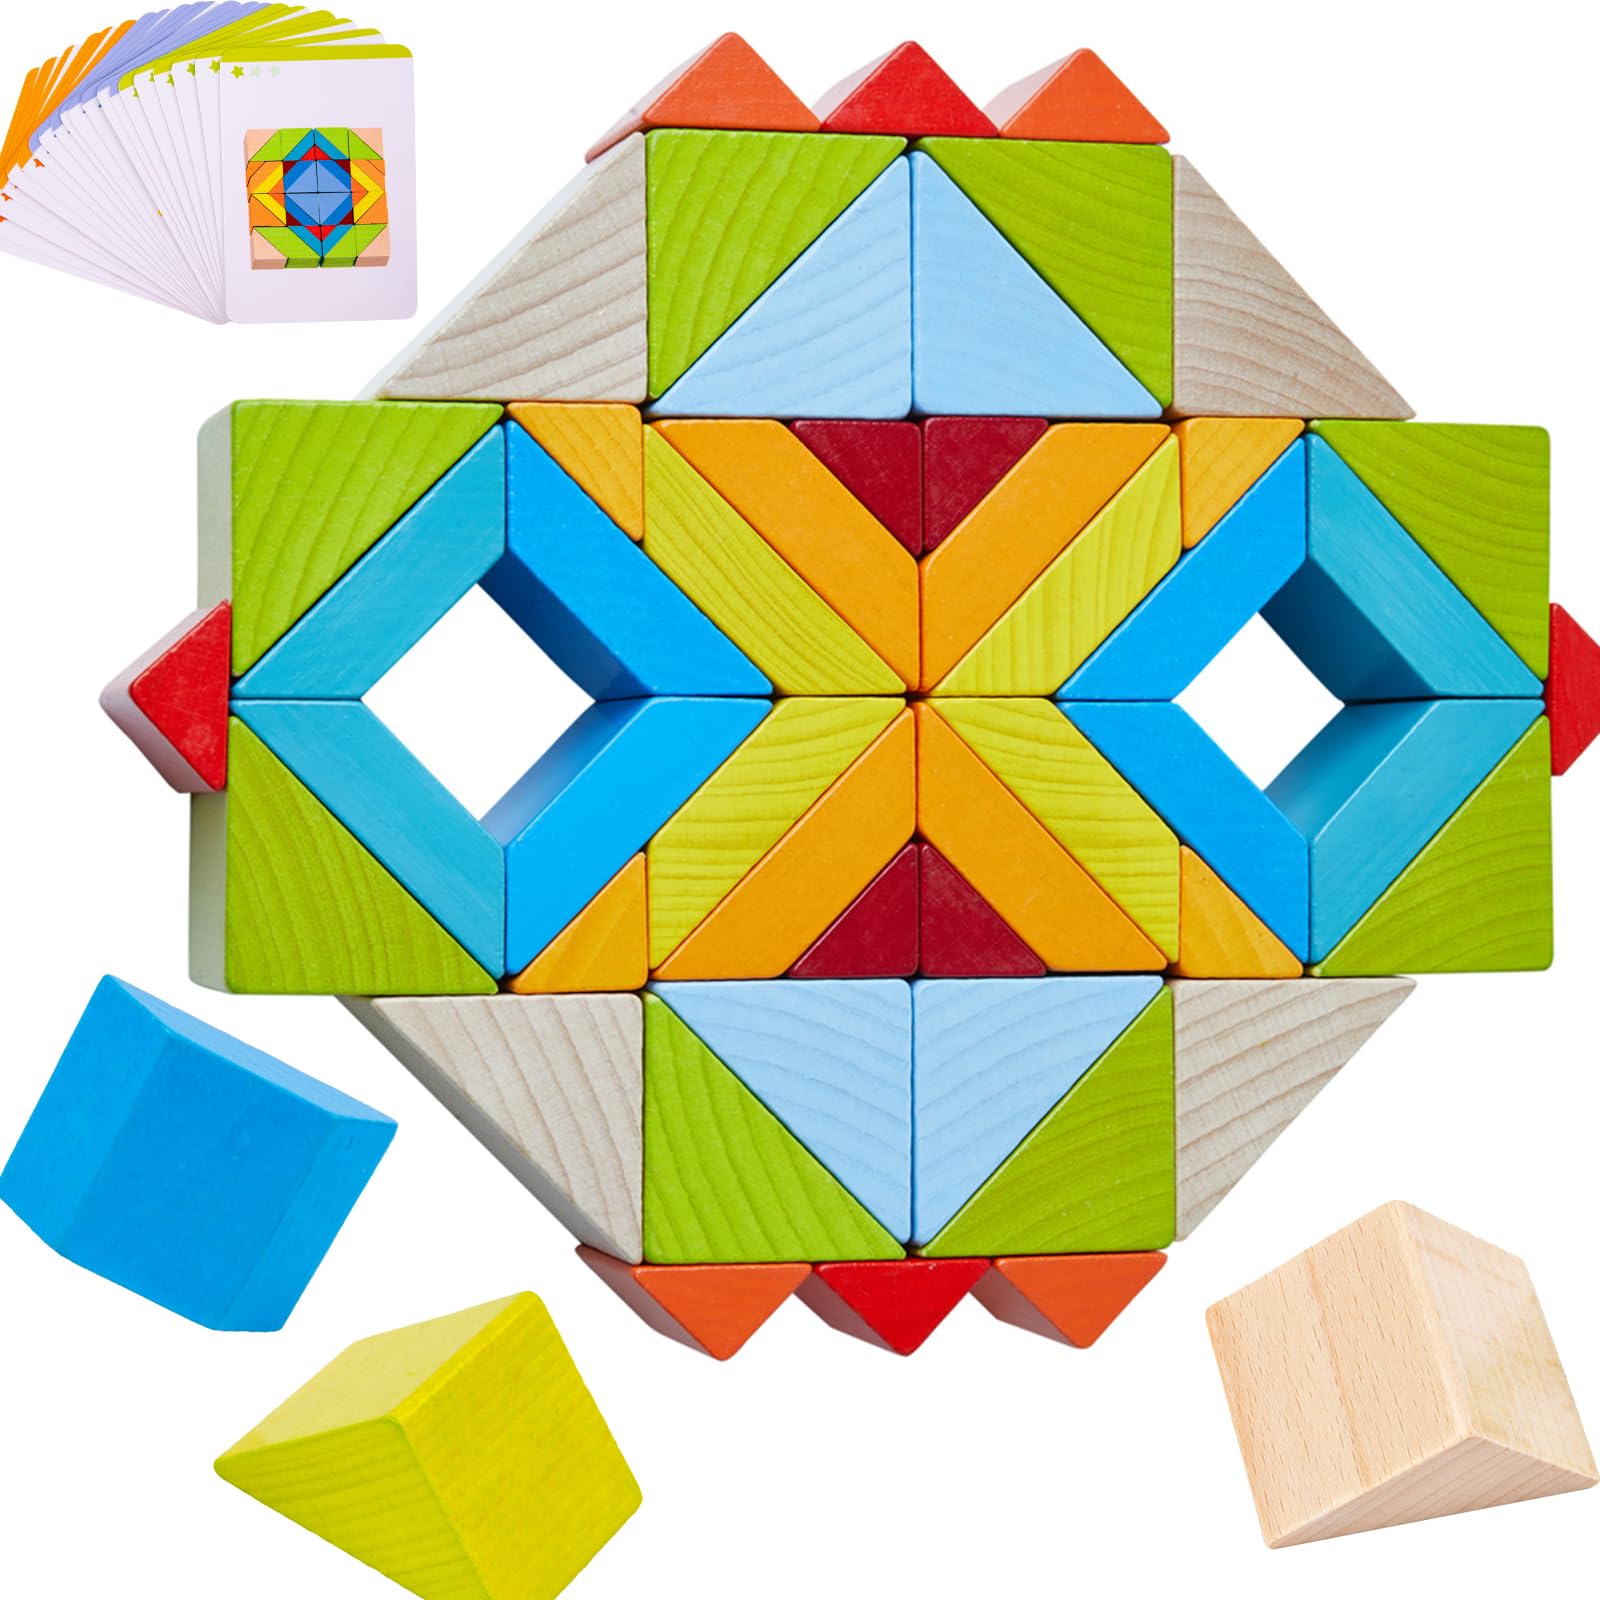 YLTTZH 48 Pcs/Set Large Wooden Blocks Toys for Toddlers Babies Age 3-8,Toddlers Wood Blocks Toys for Babies,Wooden Rainbow Stacking Blocks,Wood Building Blocks Set,Shape Puzzles,Pattern Blocks